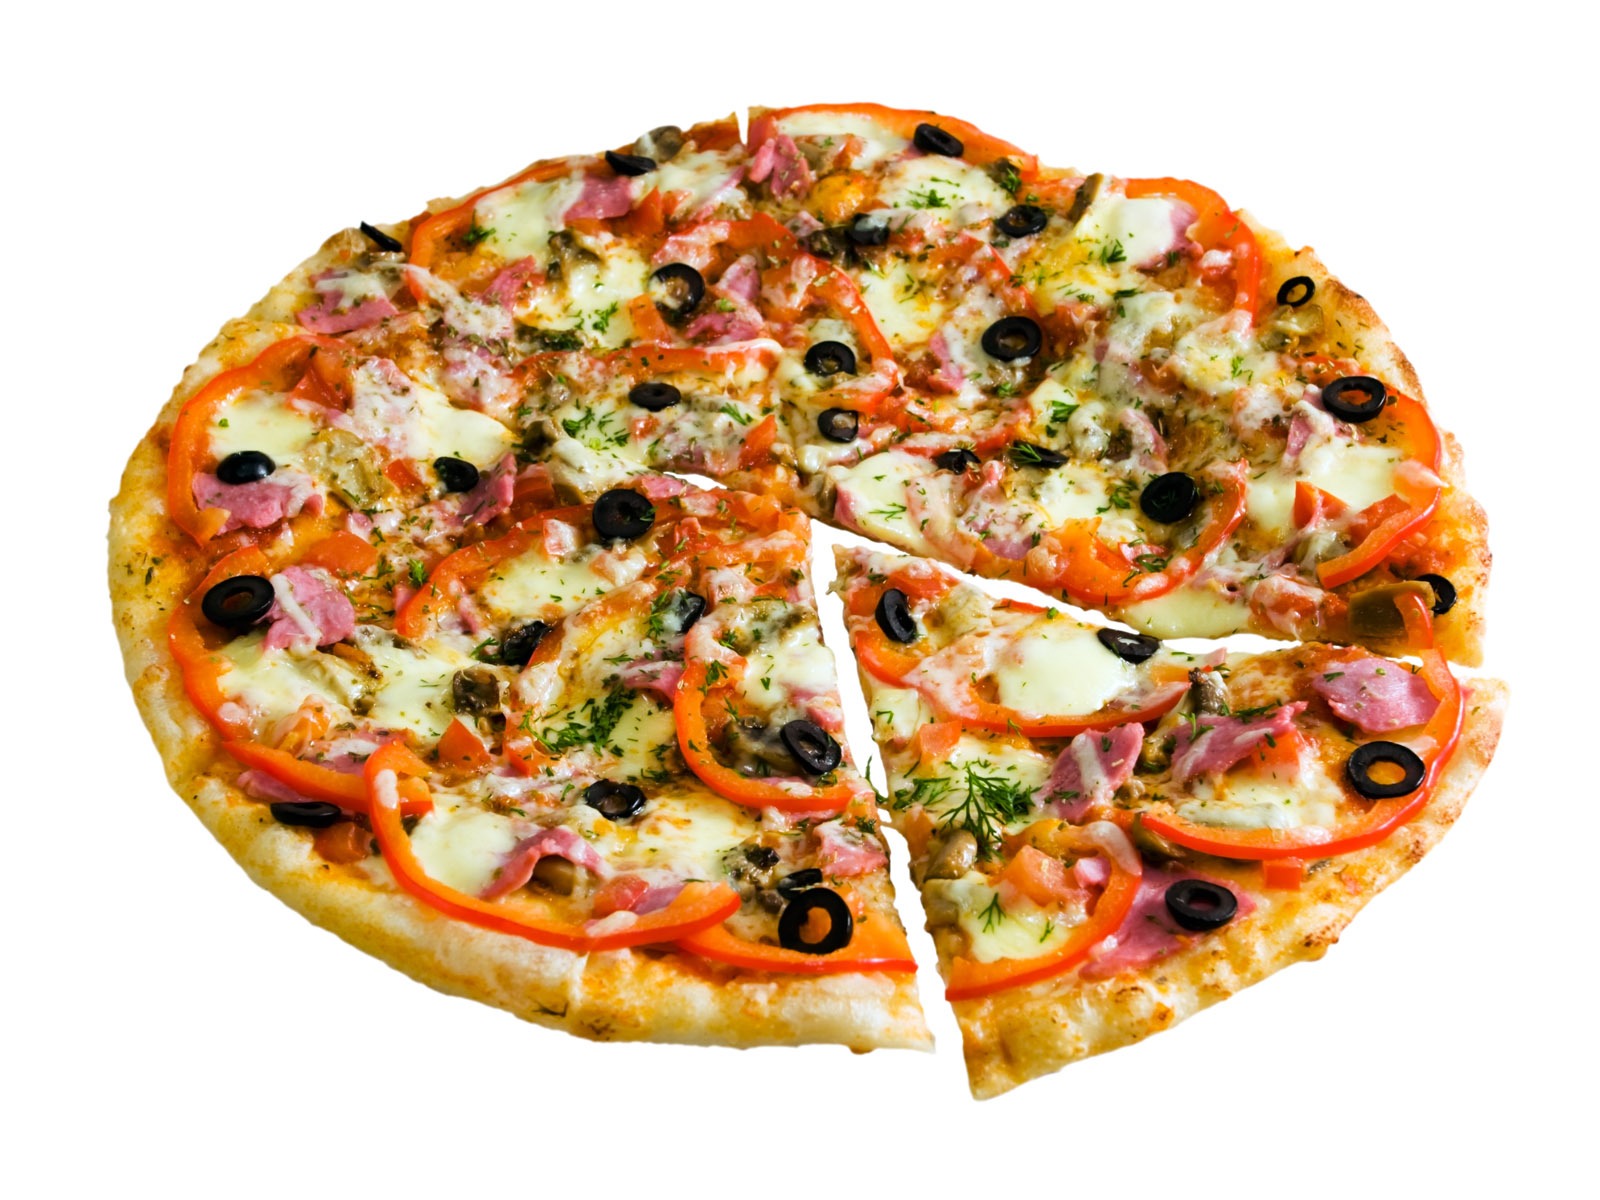 Fondos de pizzerías de Alimentos (4) #10 - 1600x1200